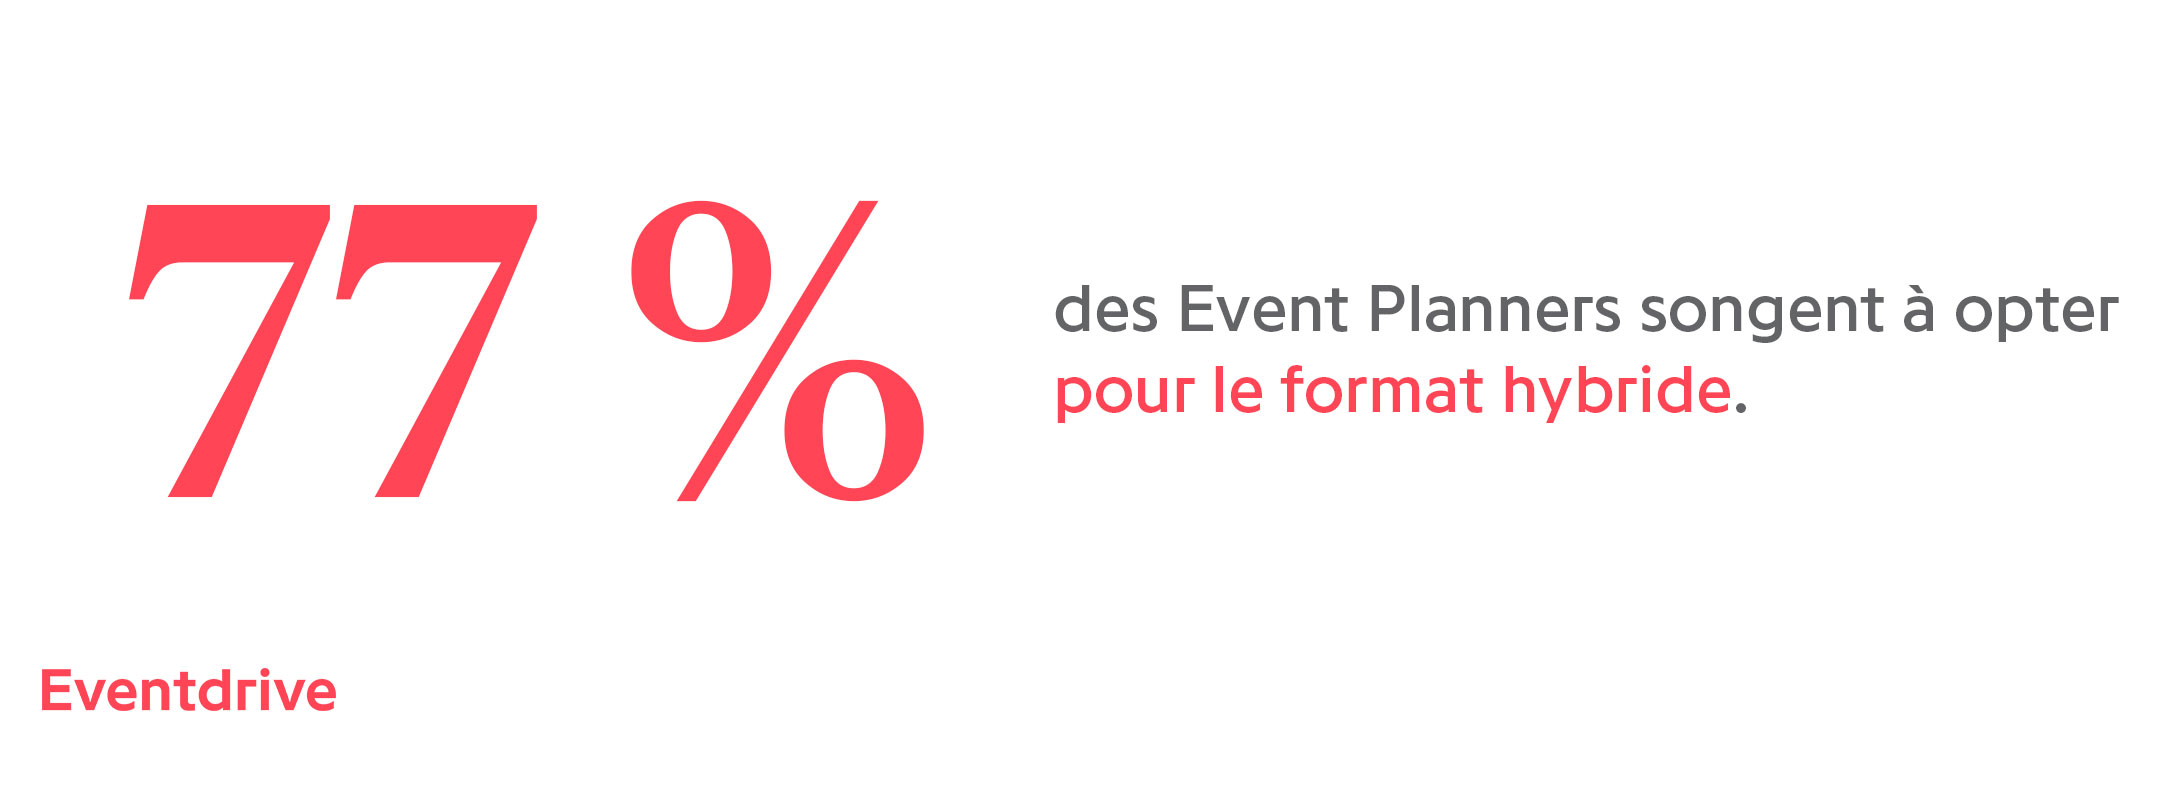 77% des Event Planners songent à opter pour le format hybride